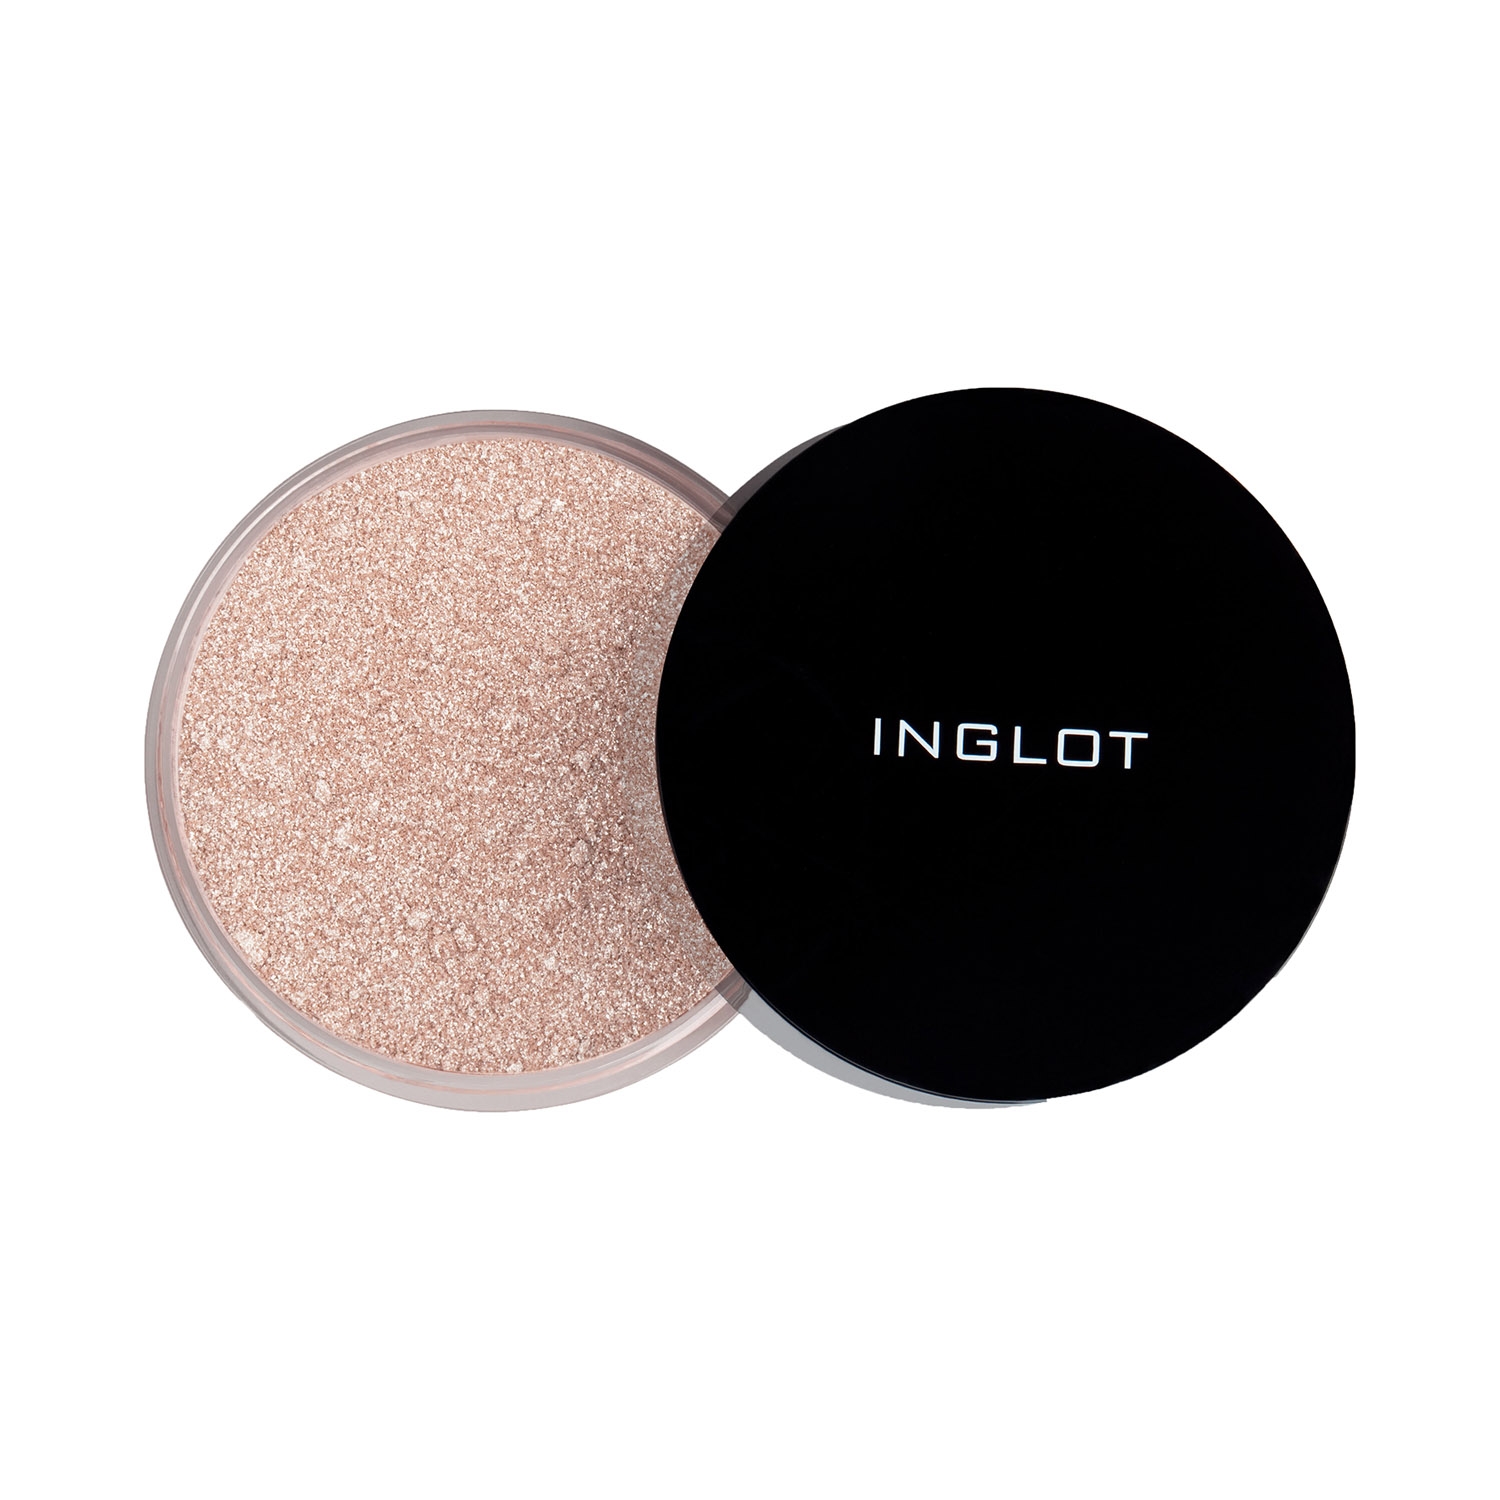 INGLOT | INGLOT Sparkling Dust - 06 Feb (2.5g)